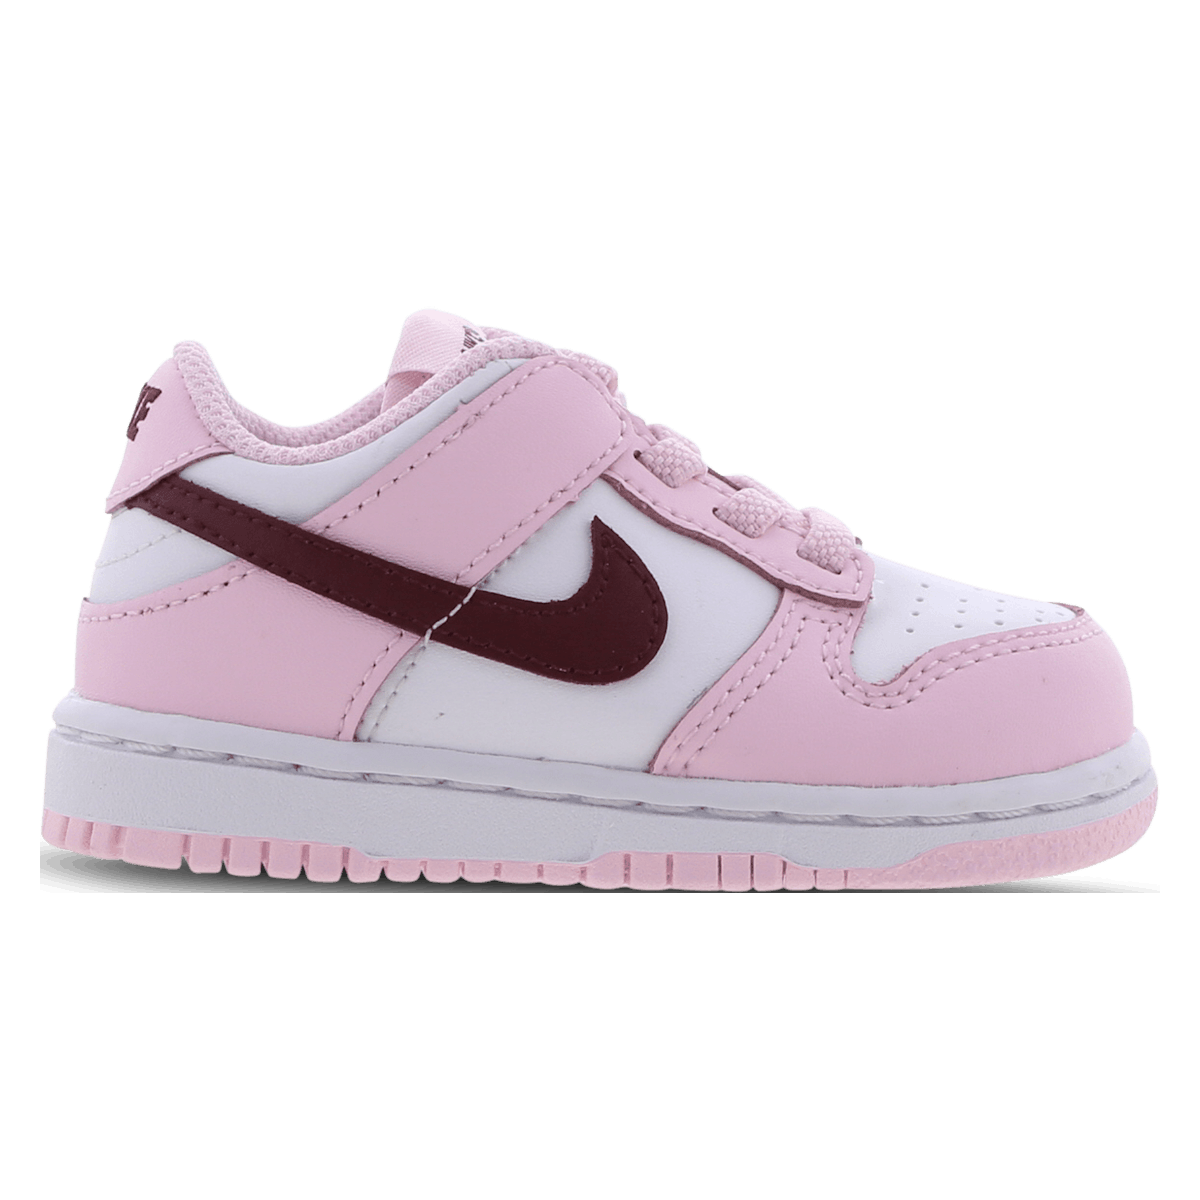 Nike Dunk Low TD "Pink Foam"